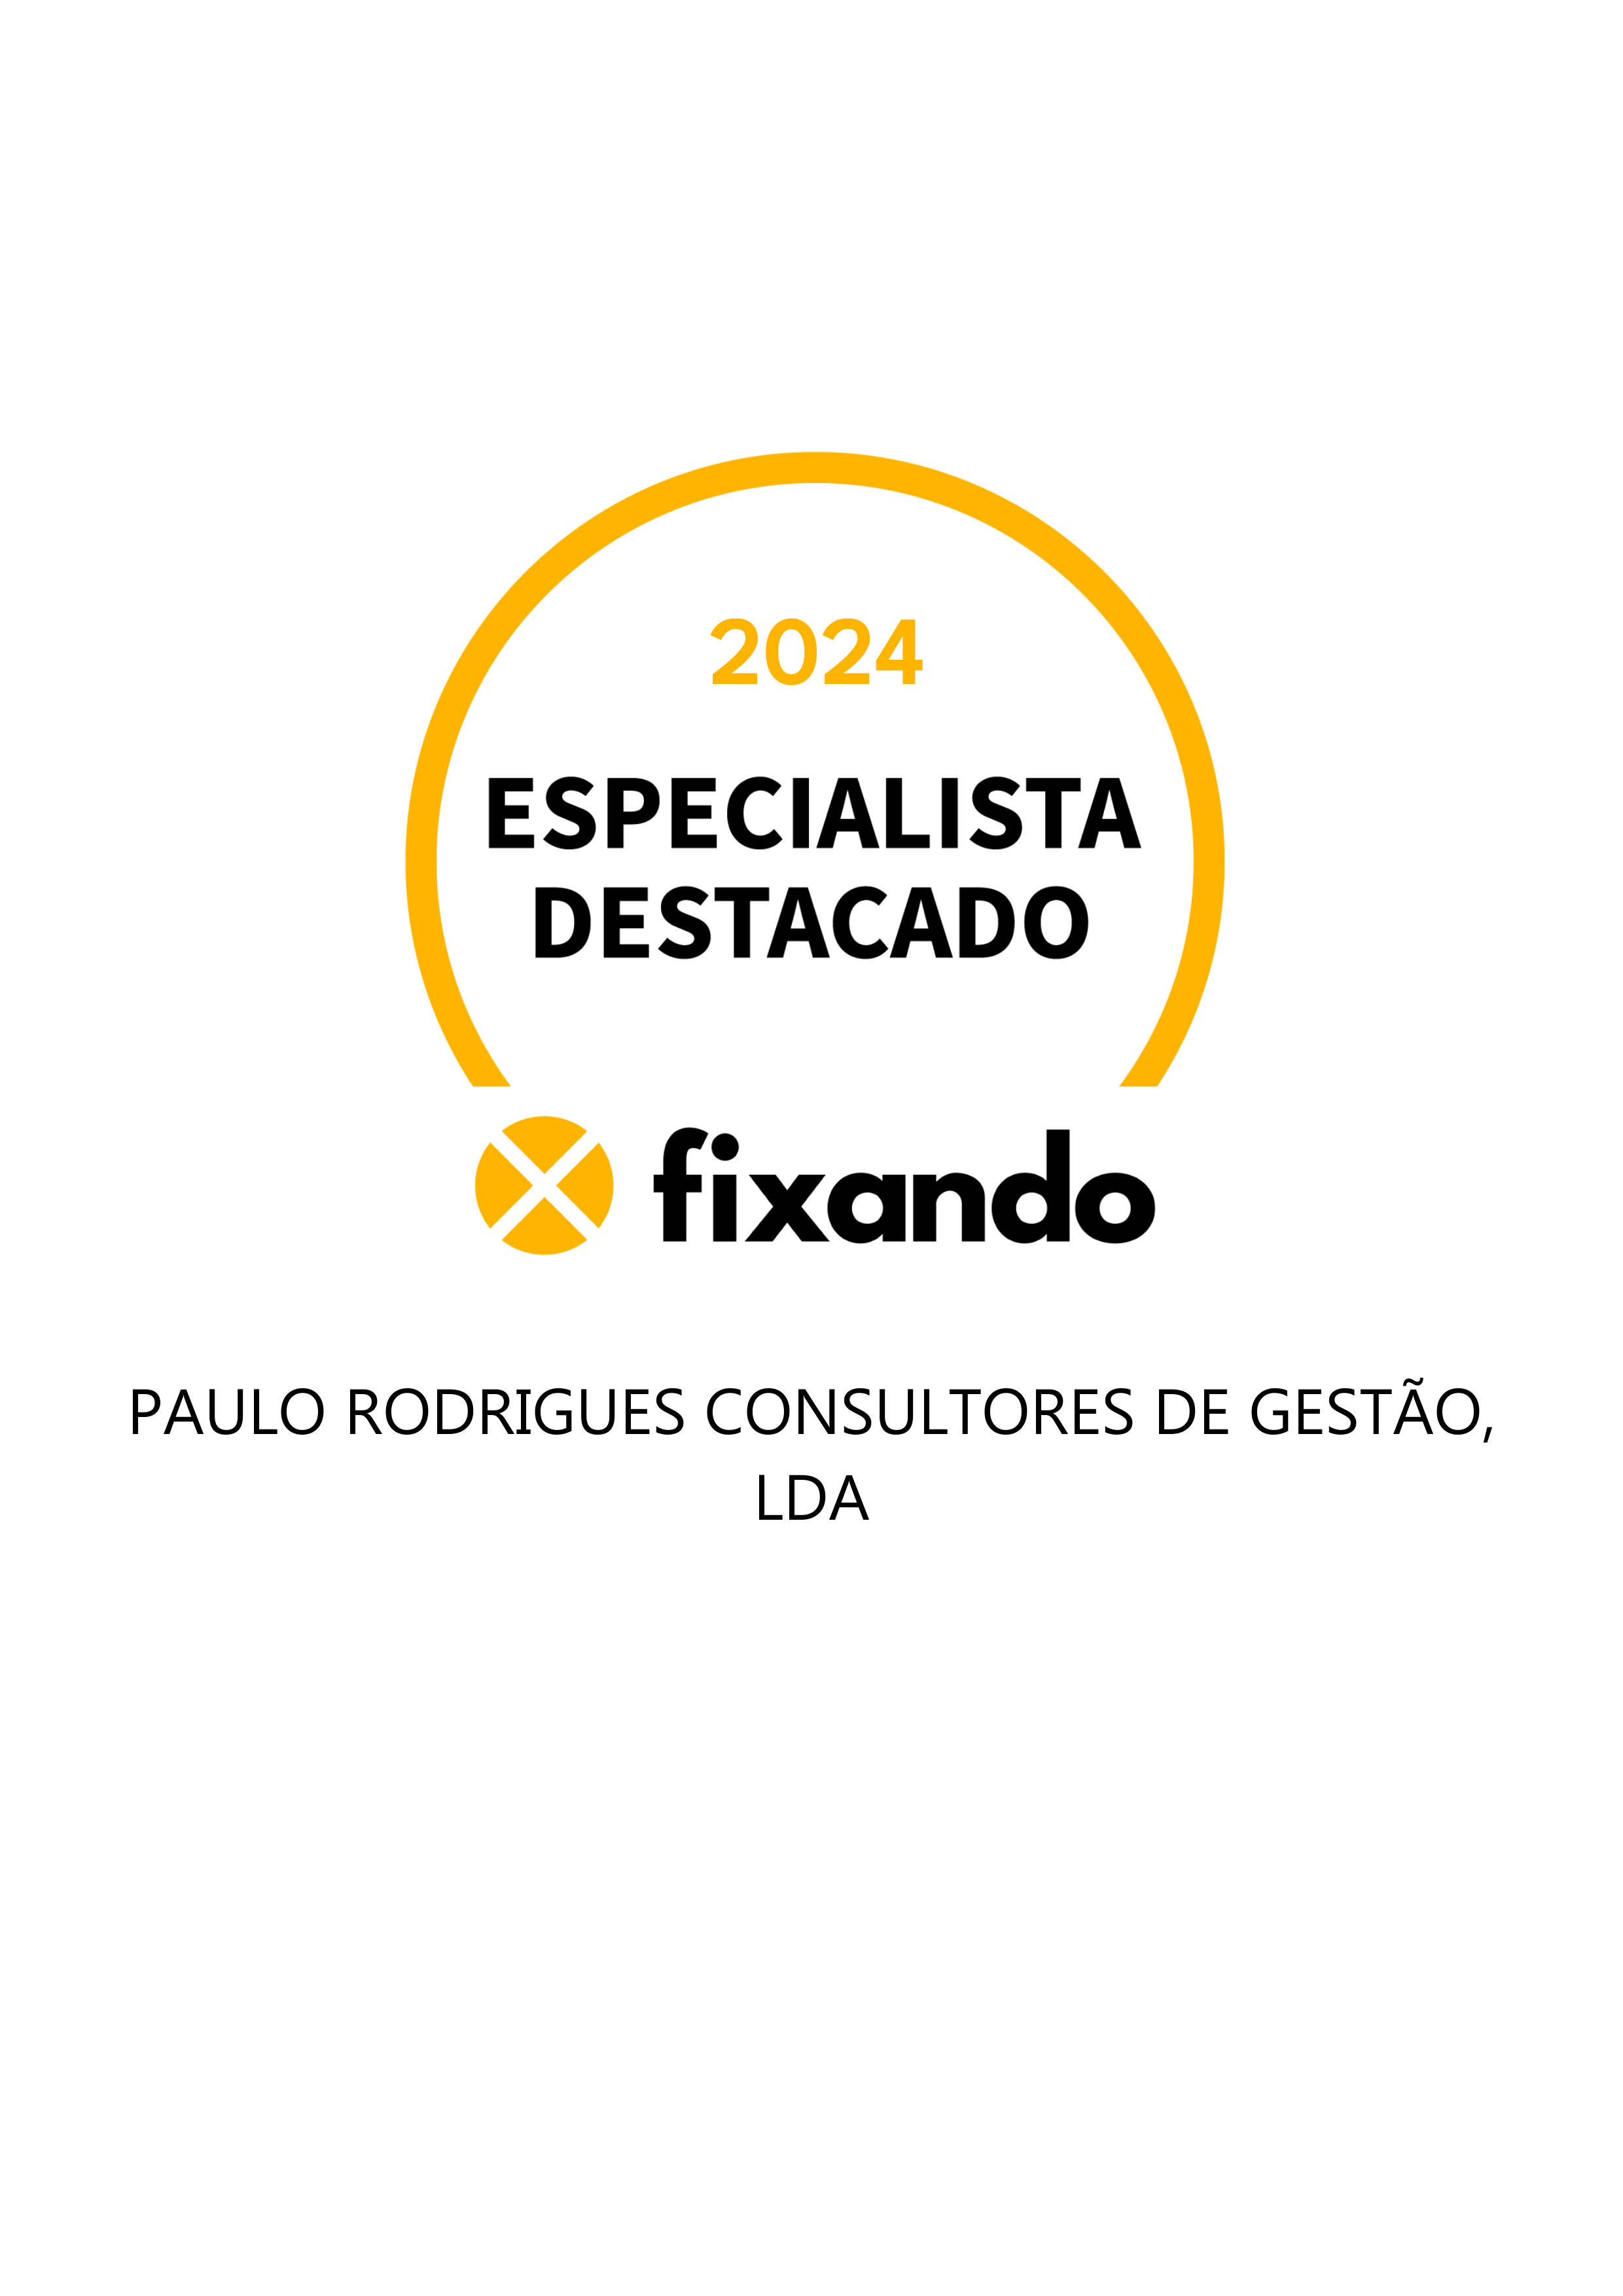 PAULO RODRIGUES CONSULTORES DE GESTÃO, LDA - Porto - Profissionais Financeiros e de Planeamento